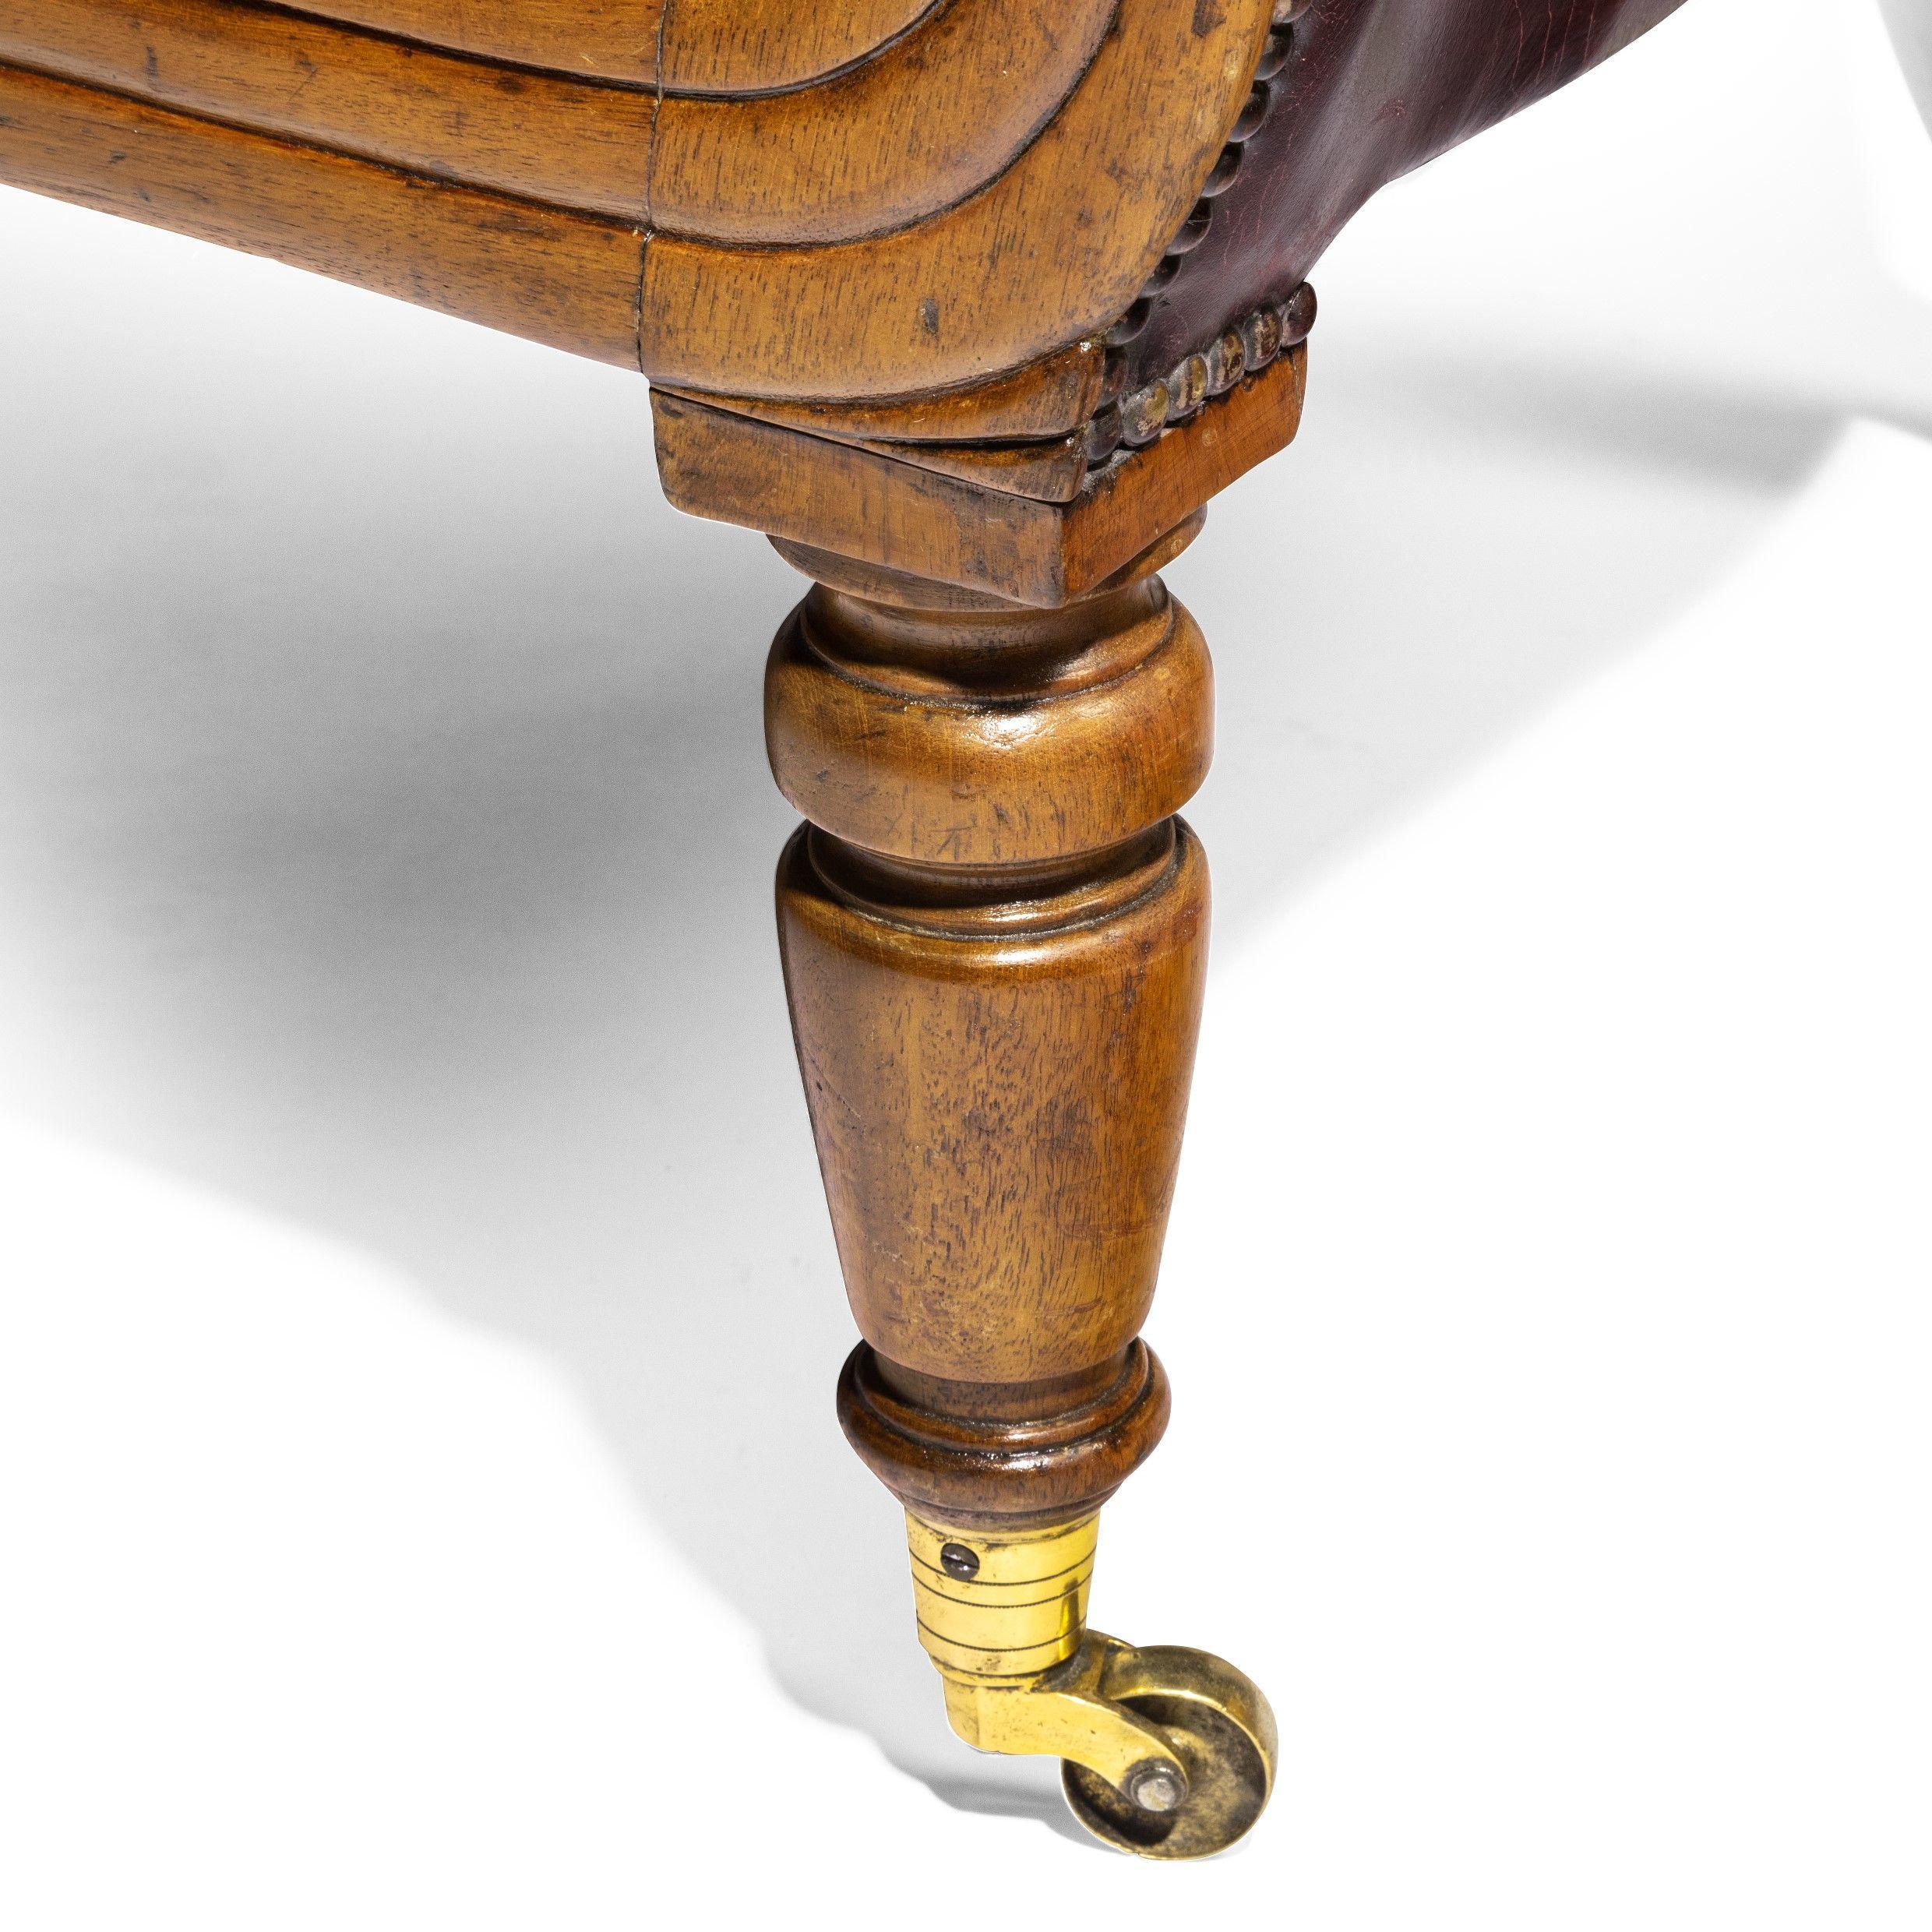 Chaise de bibliothèque William IV en acajou aux proportions généreuses. Rembourré dans nos ateliers en cuir bordeaux vieilli. Elle repose sur des pieds tournés et des roulettes en laiton.

 